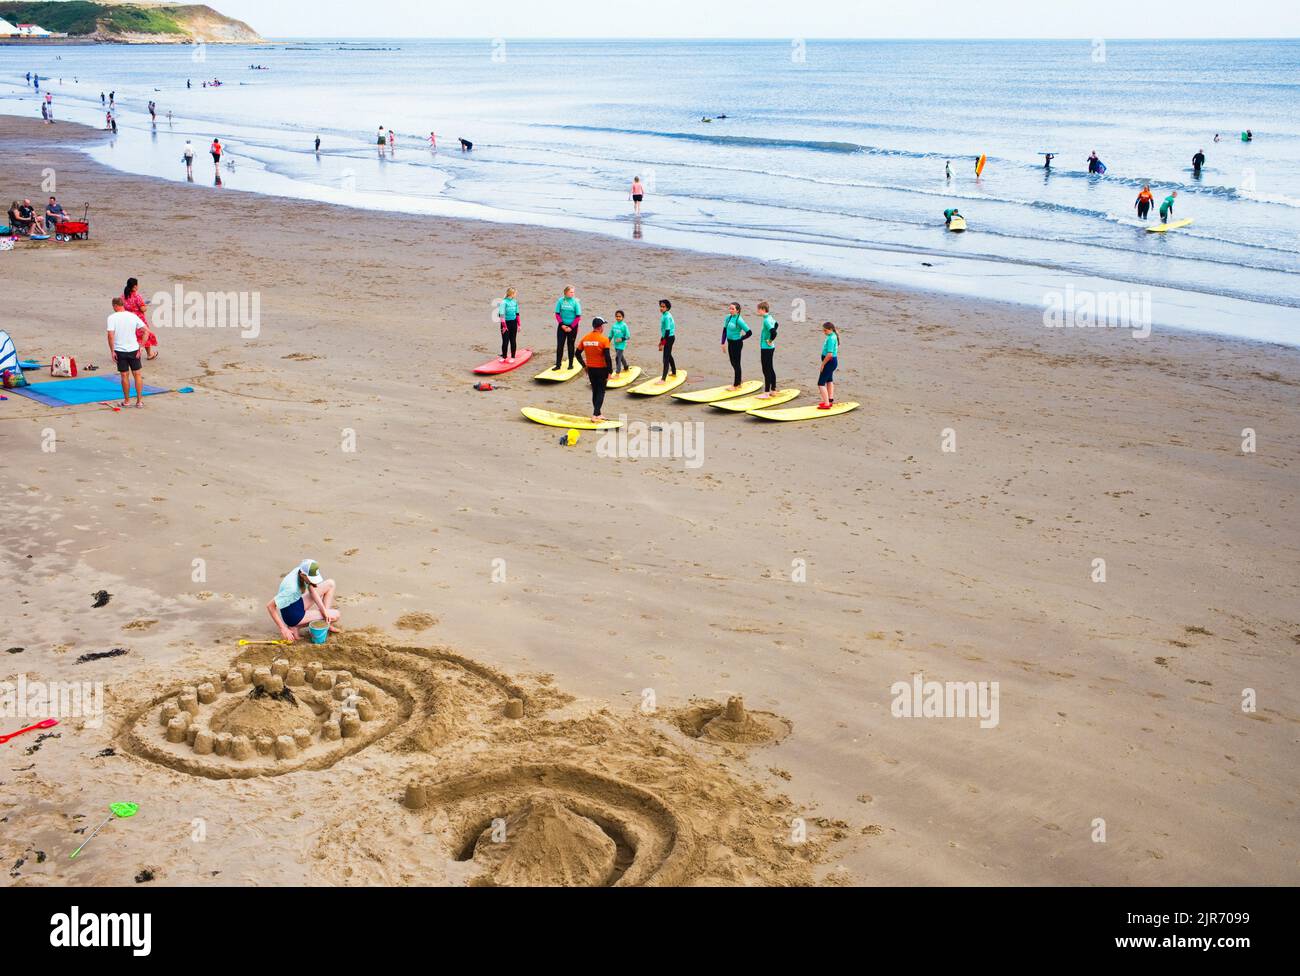 Istruttori e studenti imparano a fare surf nella baia nord di Scarborough con elaborati castelli di sabbia in primo piano Foto Stock